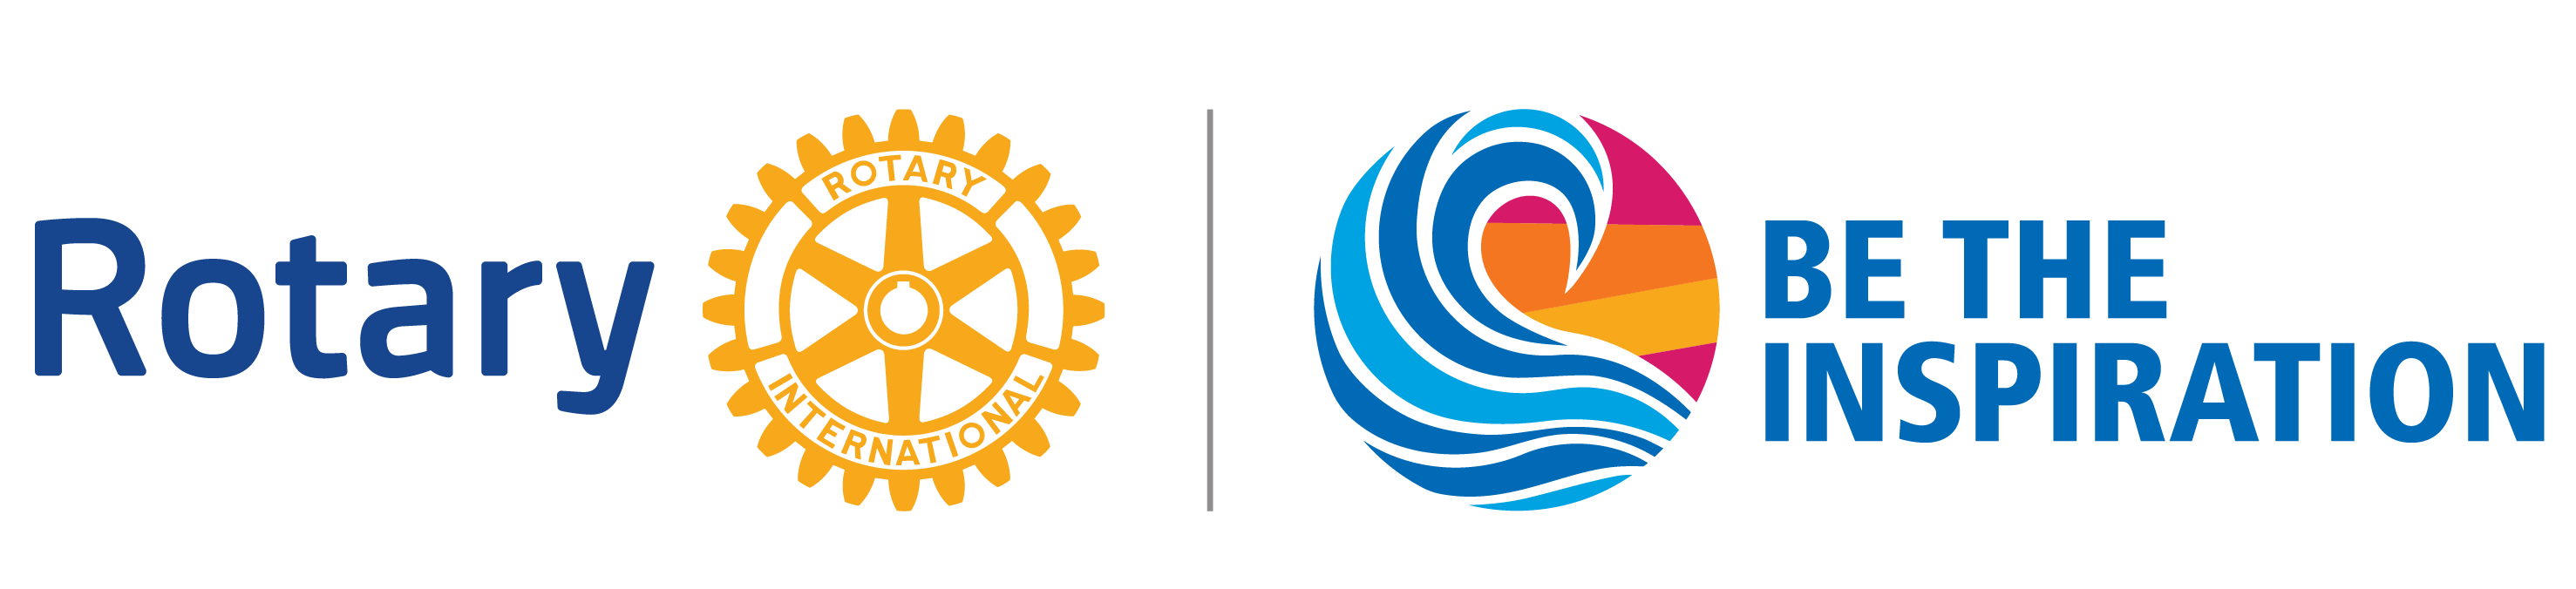 Rotary Logo - Download Rotary Logos, Themes, Photos - Rotary International ...